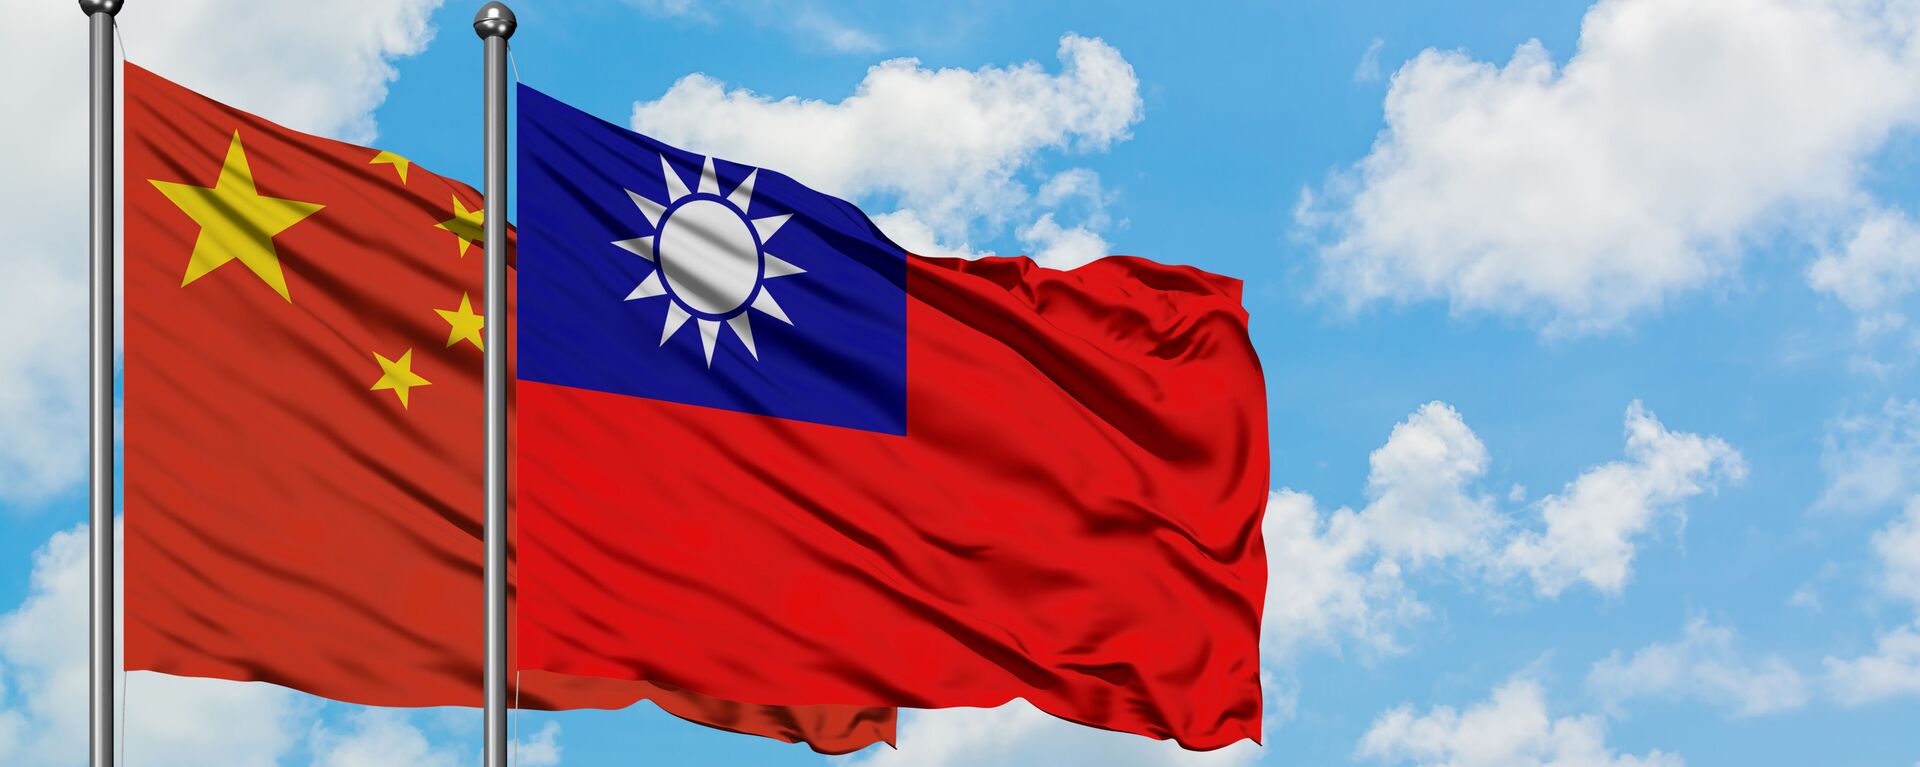 台湾は中国政府を拒否しておらず、対等な協力の用意がある＝当局 - Sputnik 日本, 1920, 12.06.2022